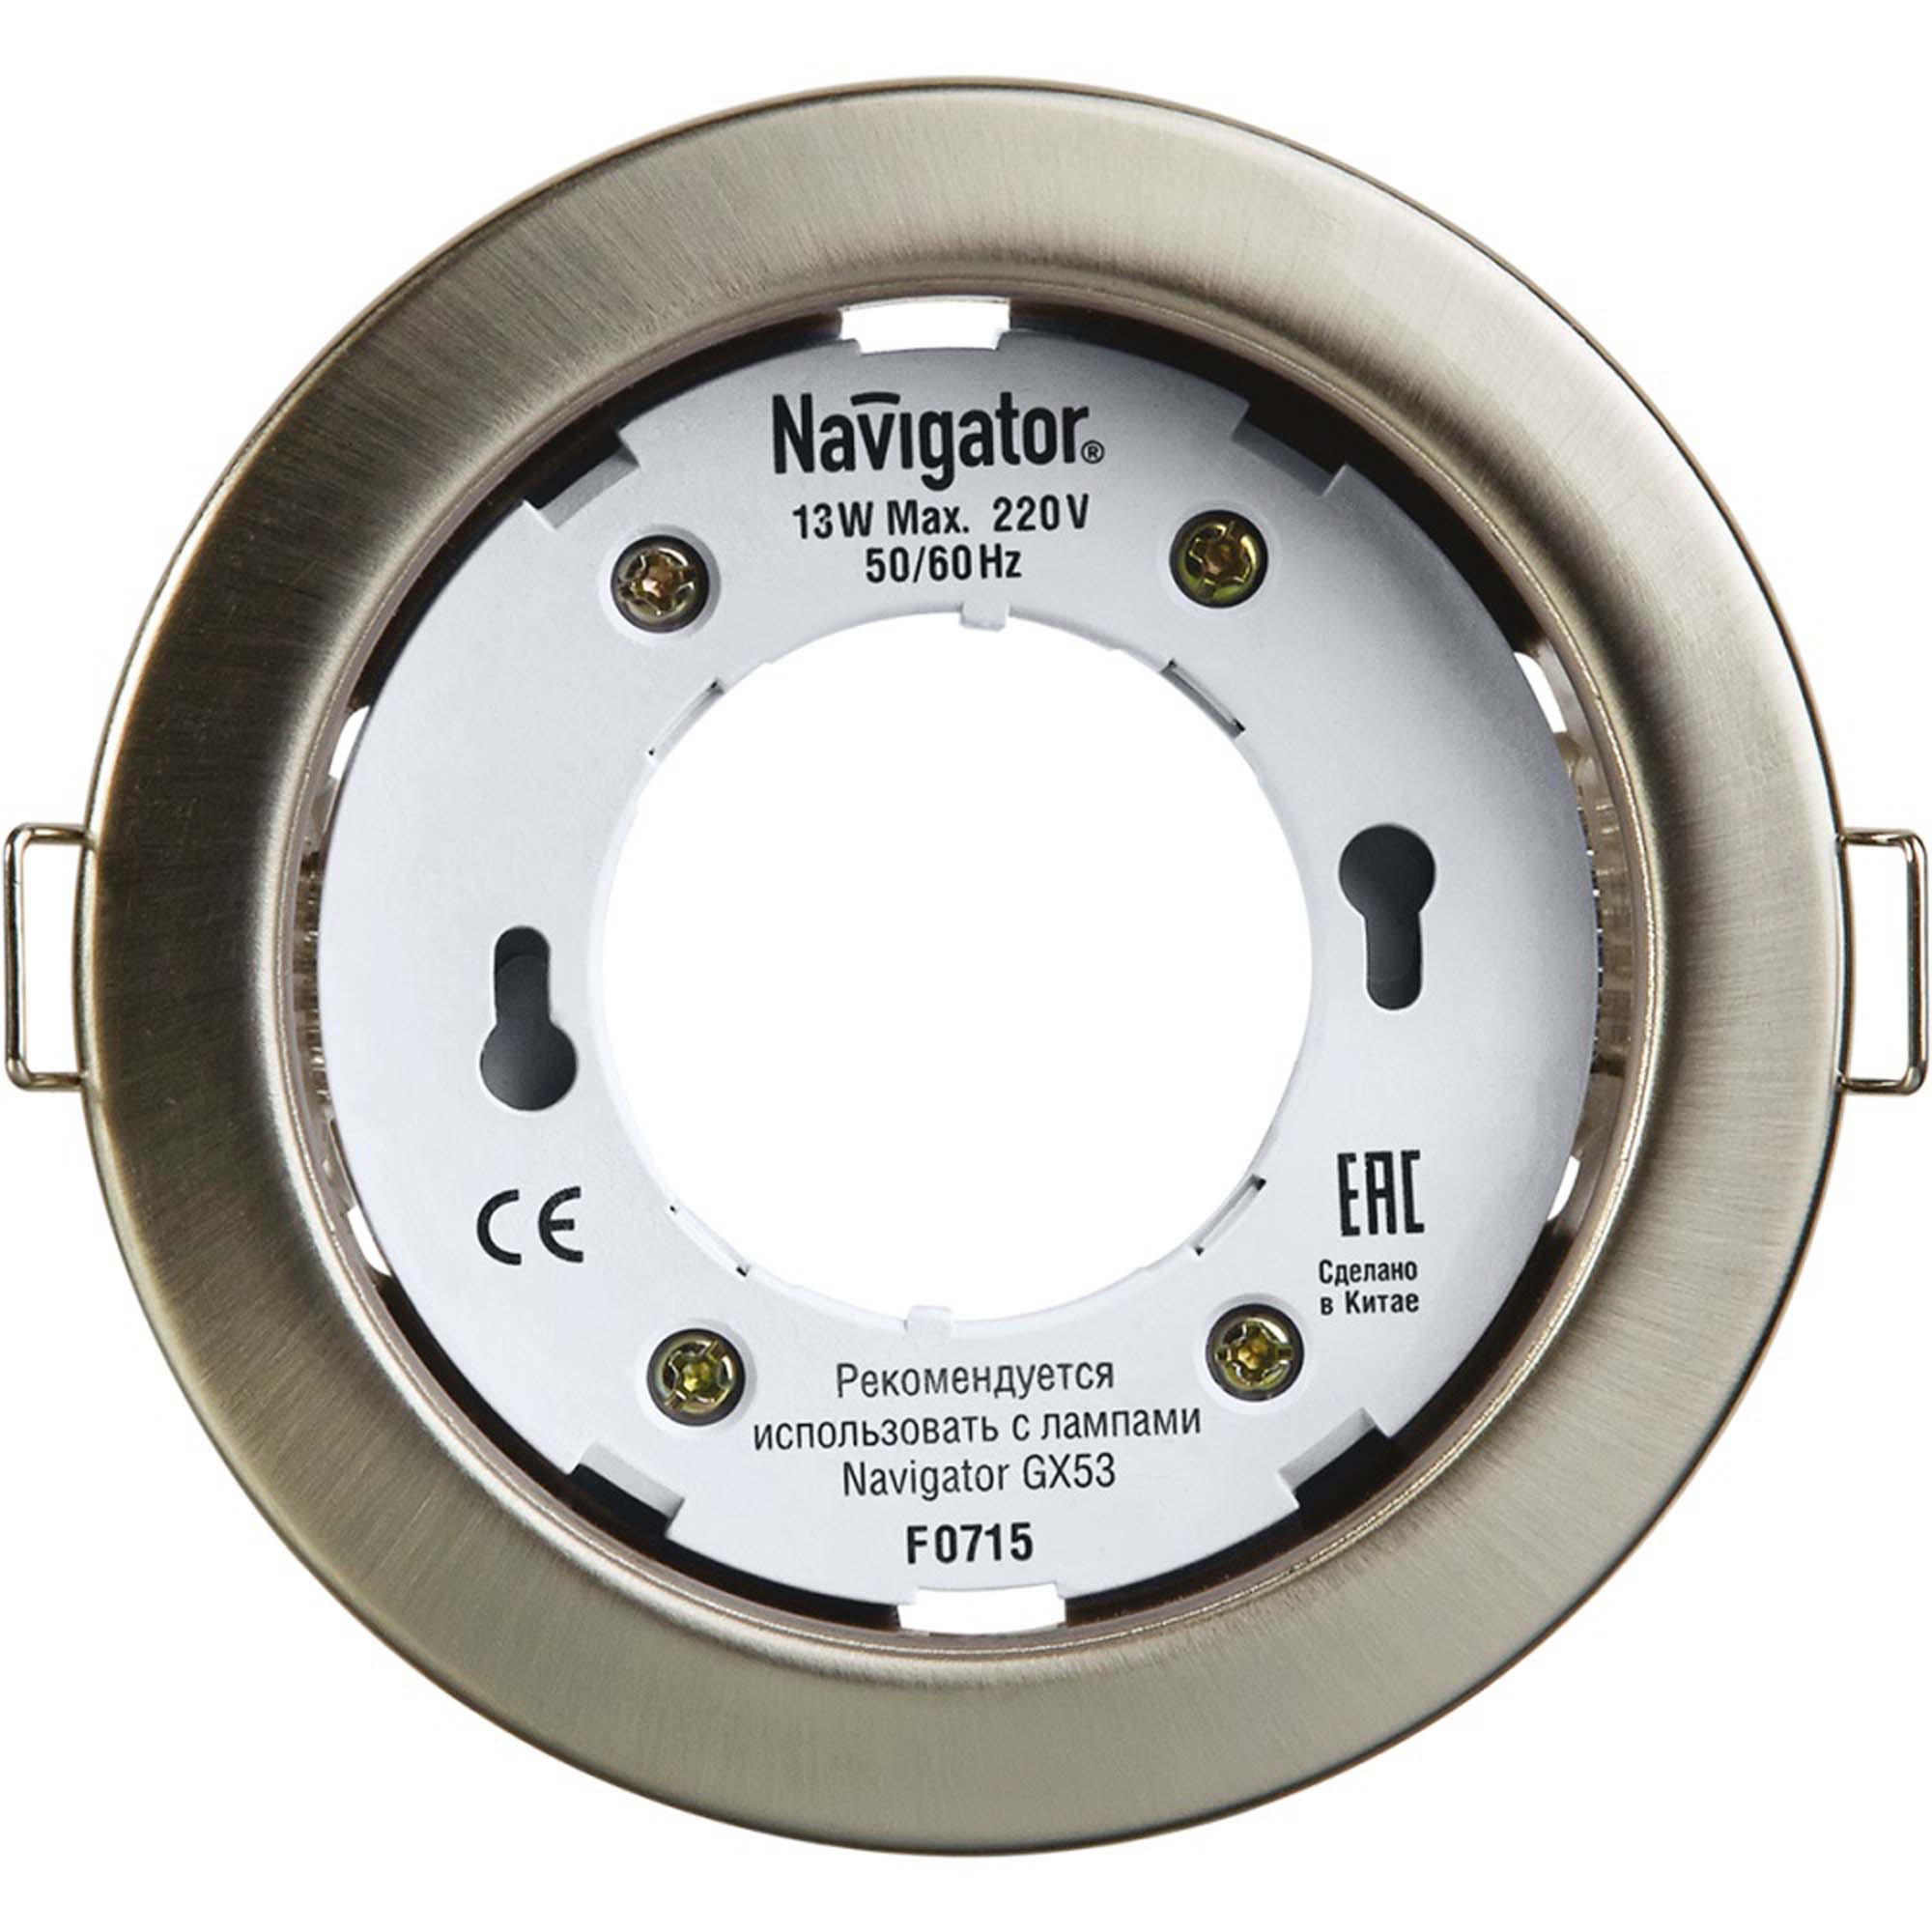 Где купить Светильник встраиваемый Navigator gx53-сатин-хром Navigator 